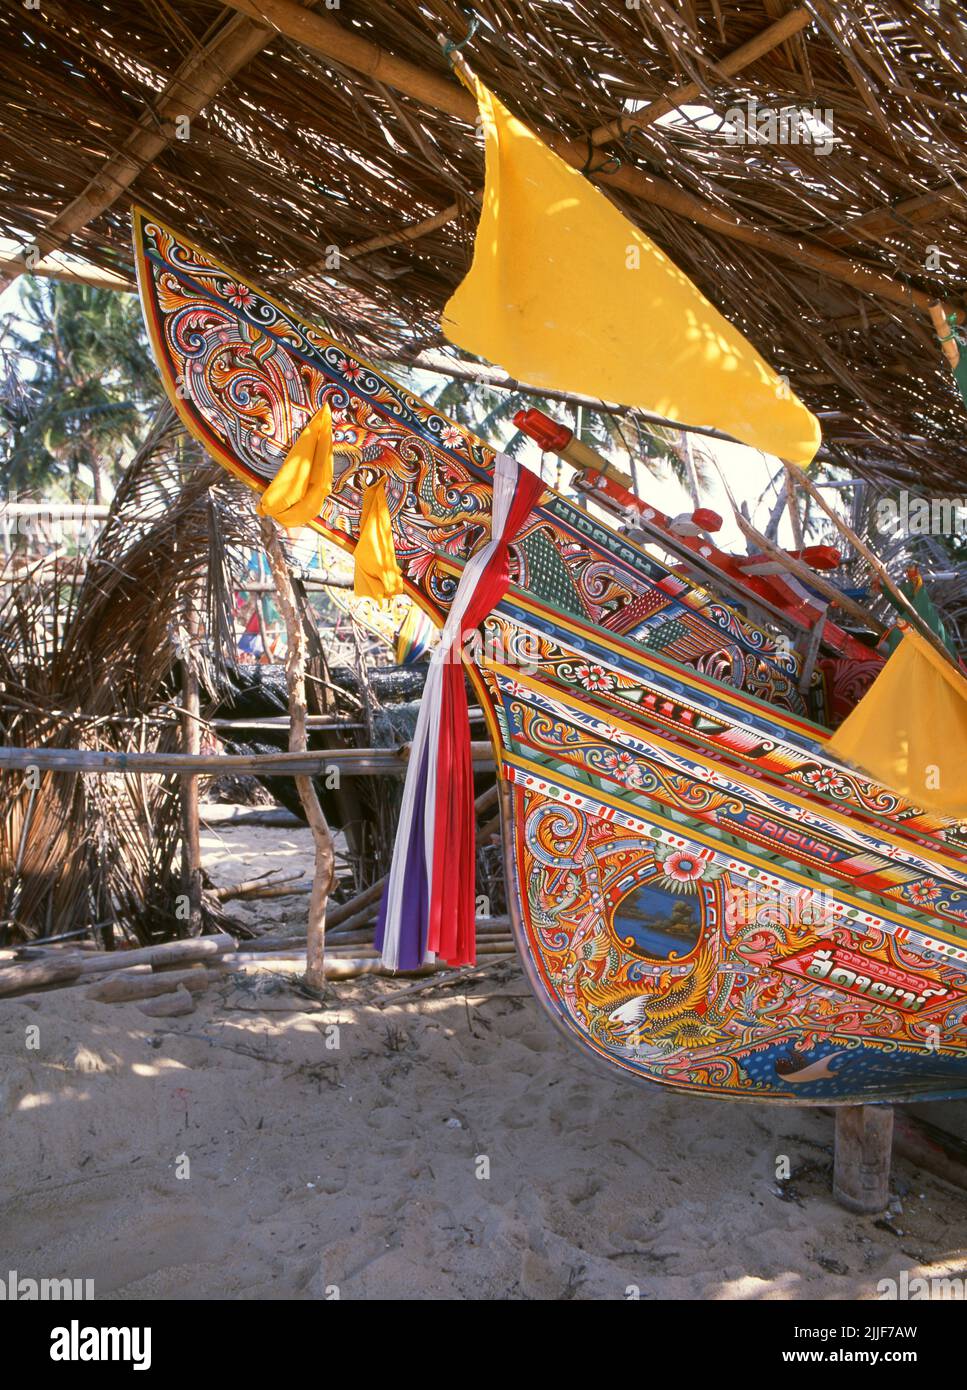 Thaïlande: Bateaux de pêche Korlae, Saiburi, sud de la Thaïlande. Le long de la côte est de la Thaïlande péninsulaire, de Ko Samui vers le sud, des bateaux de pêche colorés et peints ont été construits et décorés par des pêcheurs musulmans depuis des centaines d'années. Les meilleurs exemples de cette industrie en déclin proviennent des chantiers navals du district de Saiburi, dans la province de Pattani. Parmi les personnages représentés sur les dessins détaillés de la coque sont le lion de singha, l'oiseau corné de gagasura, le serpent de mer payanak, et l'oiseau garuda qui est à la fois le symbole du Royaume thaïlandais et le mont mythique du Dieu hindou Vishnu. Banque D'Images